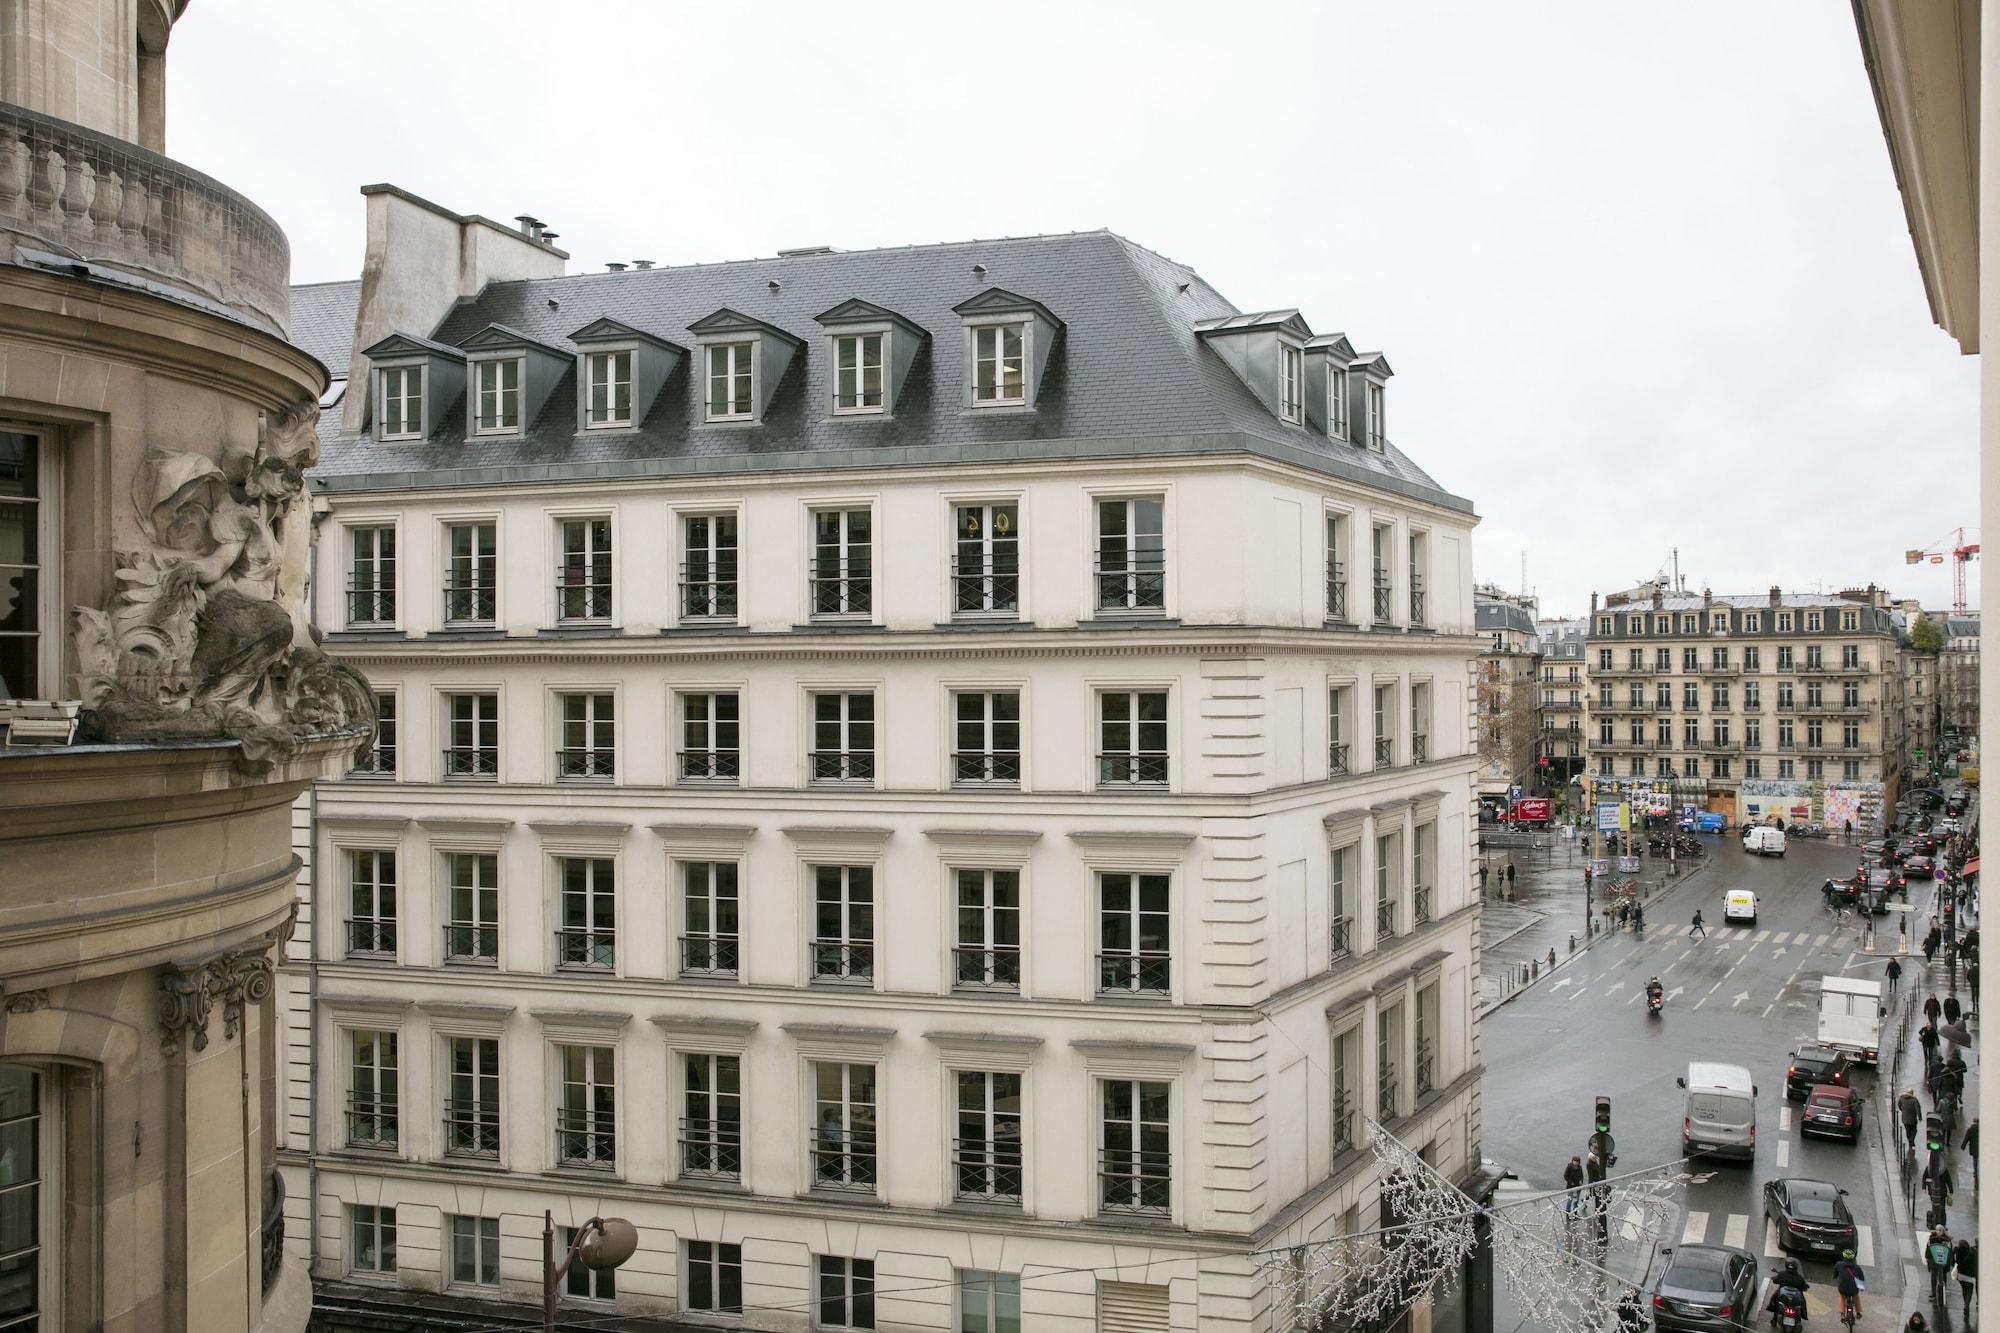 Hotel de Seze París Exterior foto